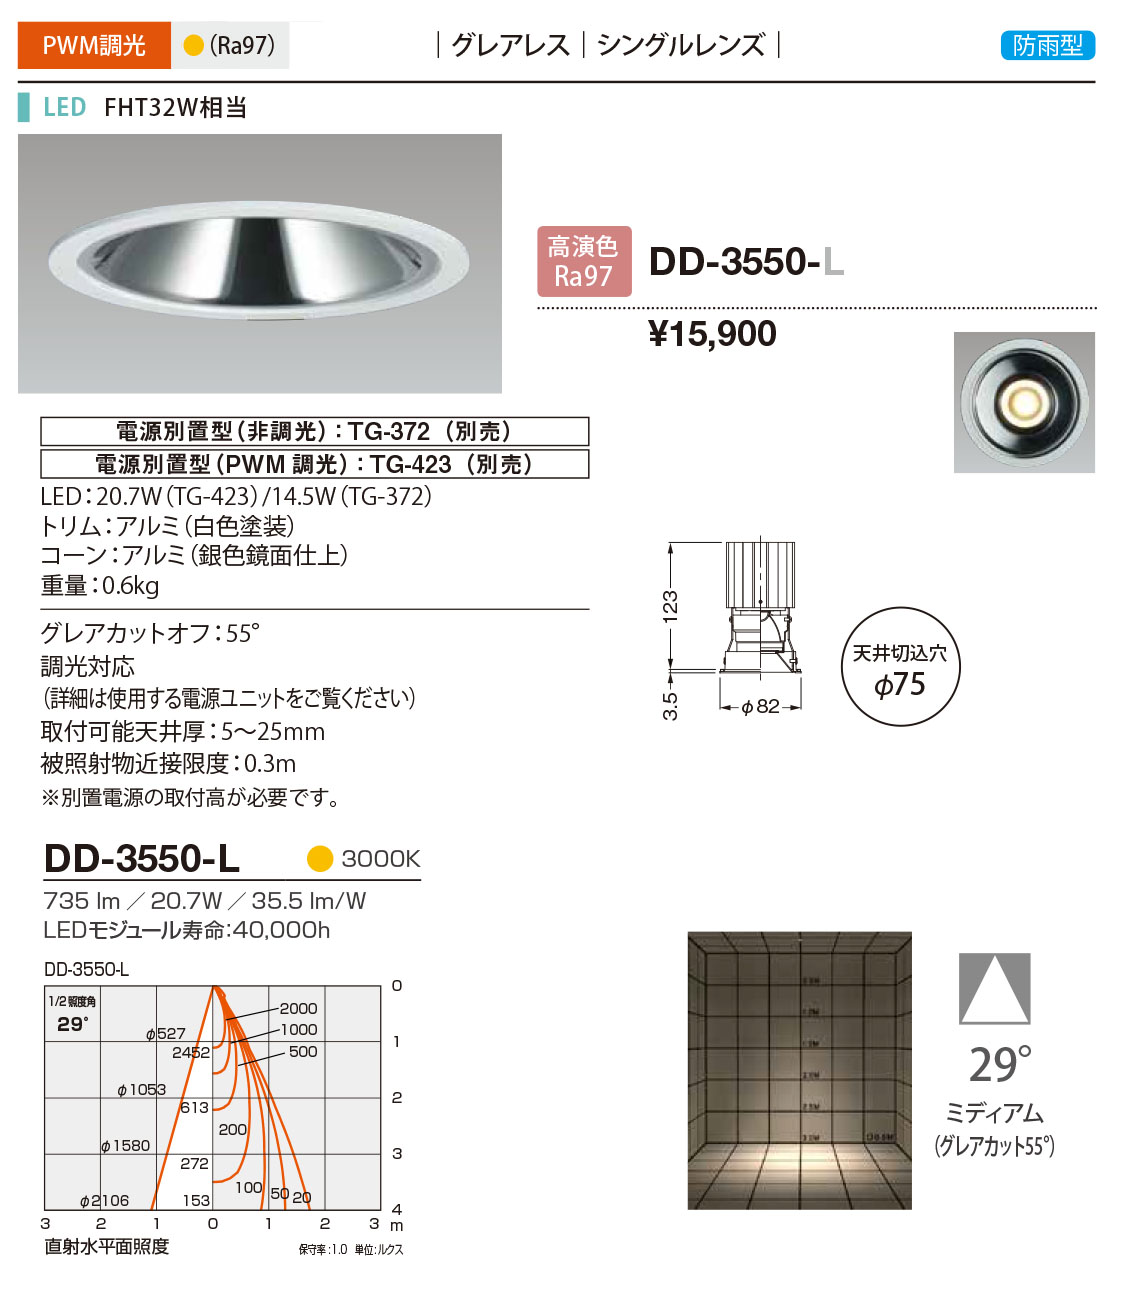 DD-3550-L RcƖ p_ECg F 75 LED dF  29x